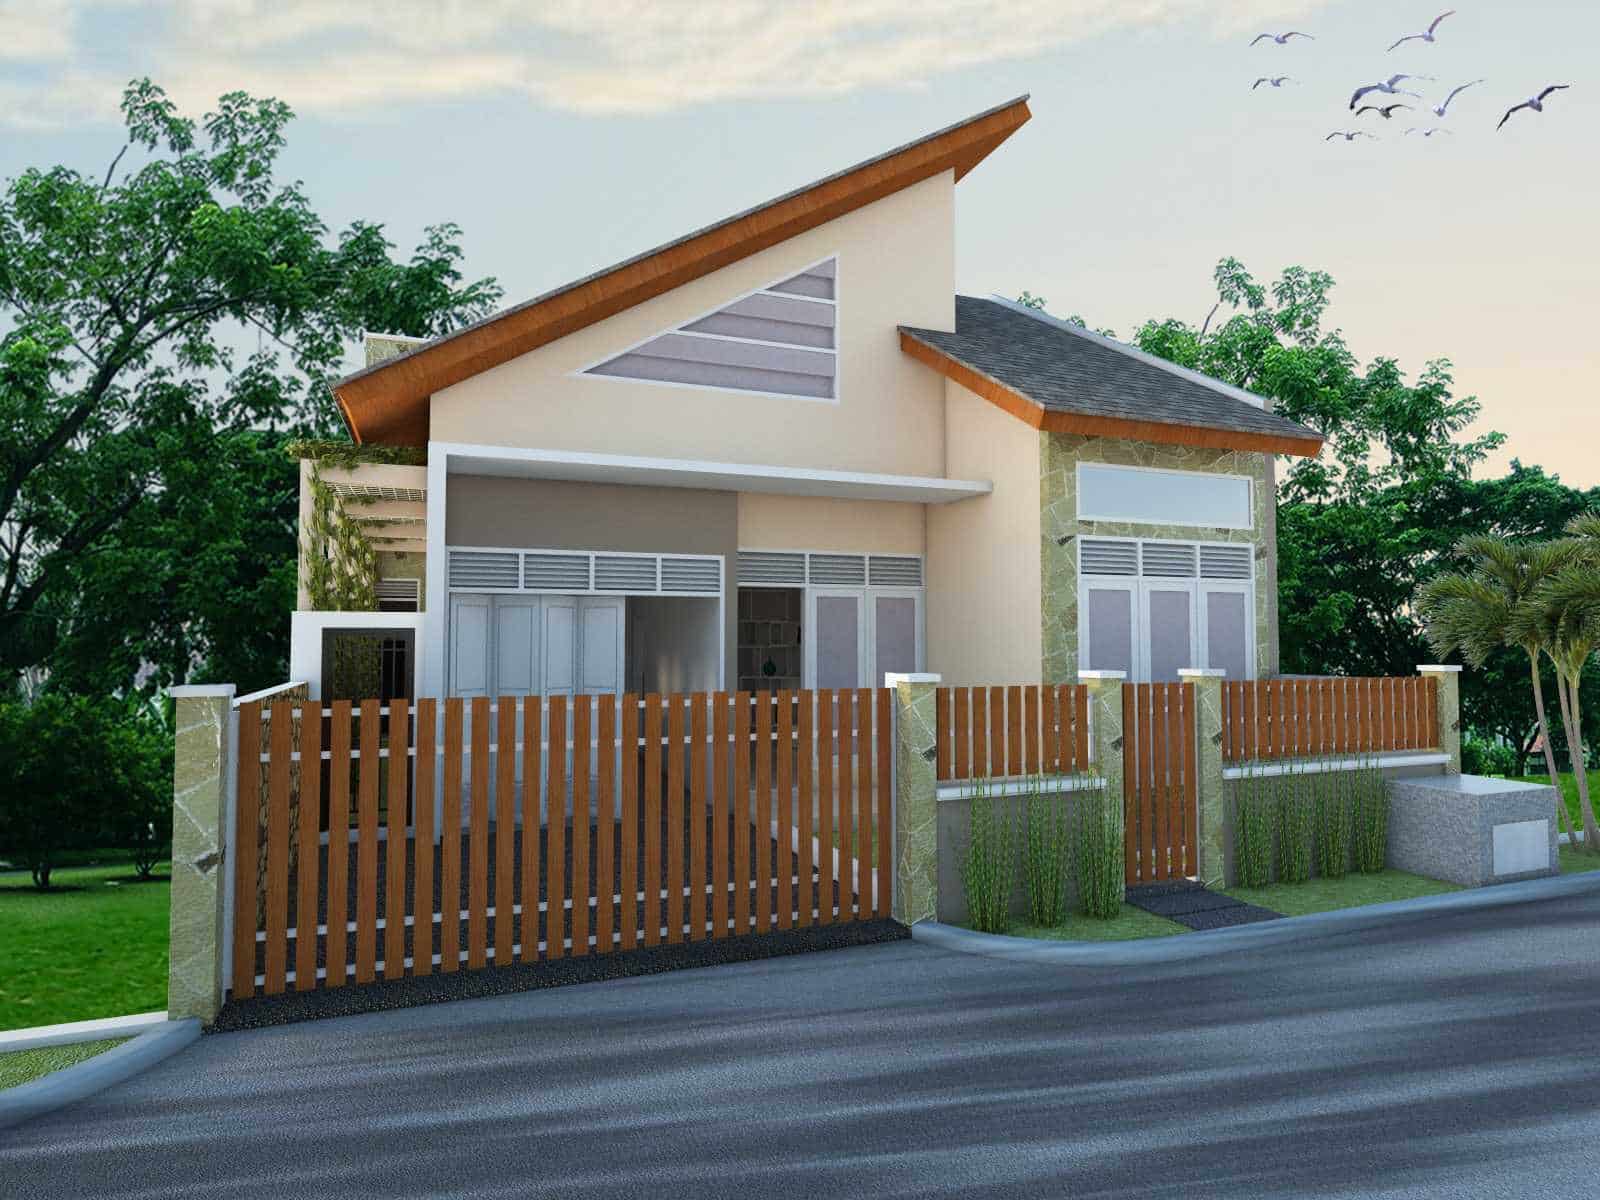 Contoh Desain Rumah Desa Sederhana